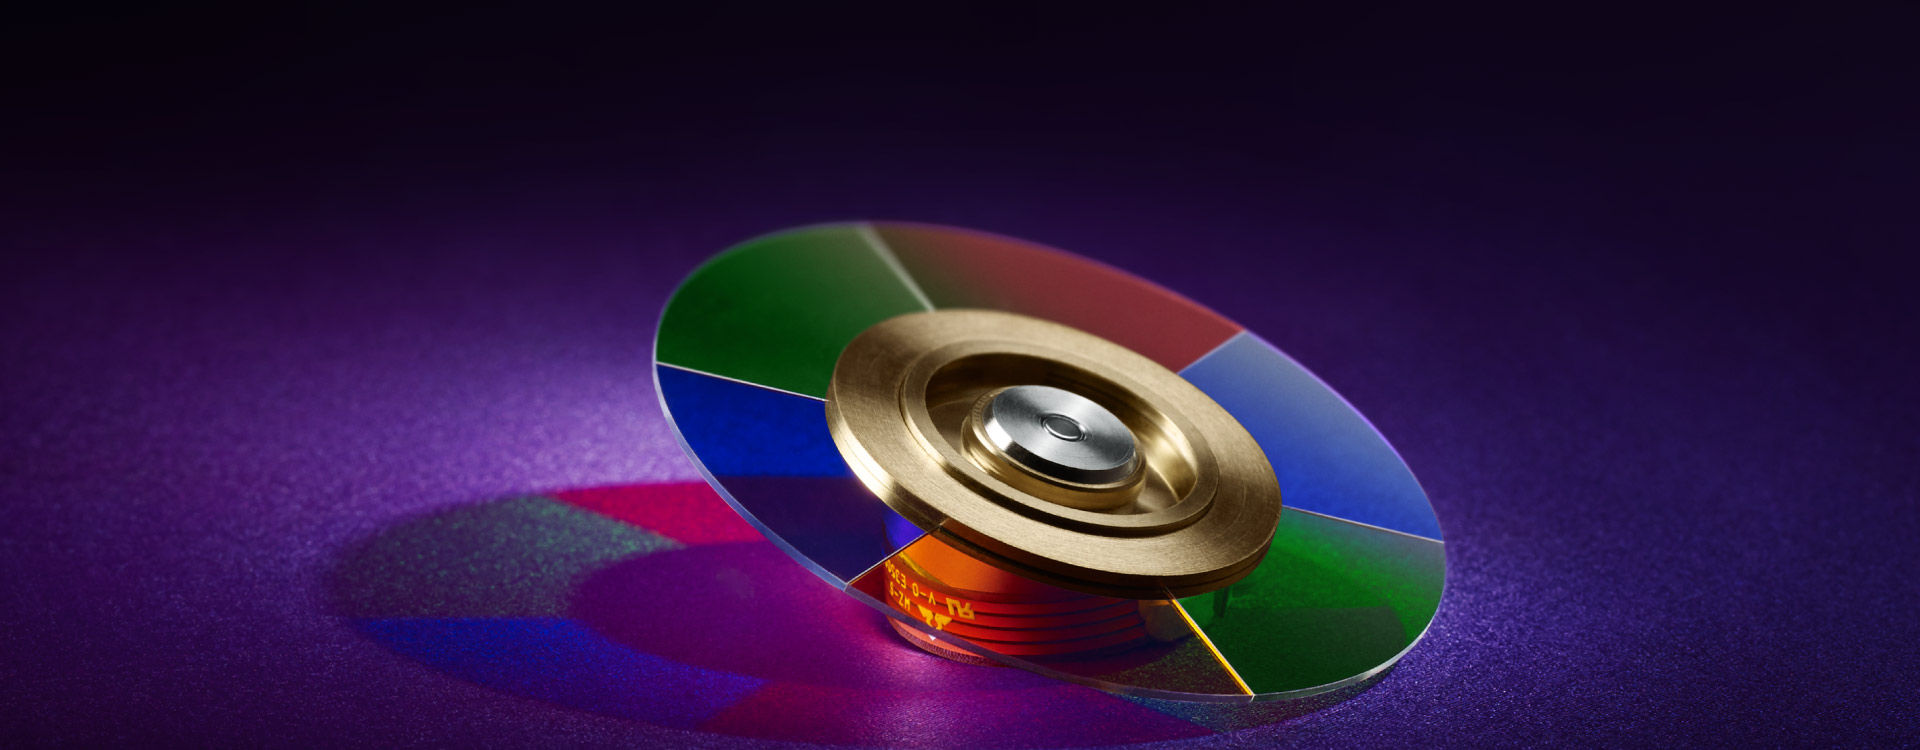 Darstellung von einem RGBRGB-Farbrad eines DLP-Beamers